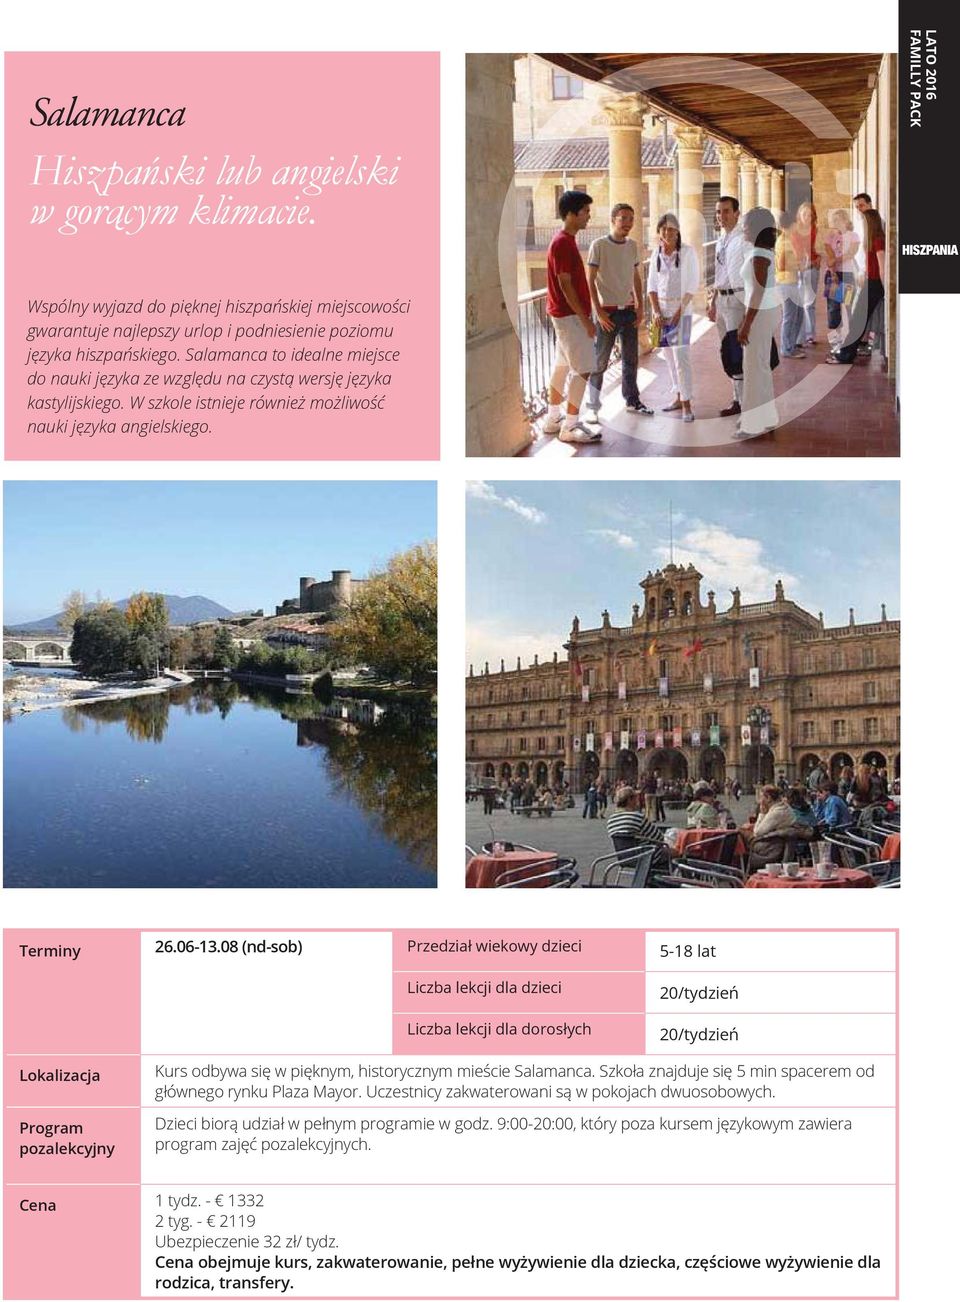 Salamanca to idealne miejsce do nauki języka ze względu na czystą wersję języka kastylijskiego. W szkole istnieje również możliwość nauki języka angielskiego. Terminy 26.06-13.